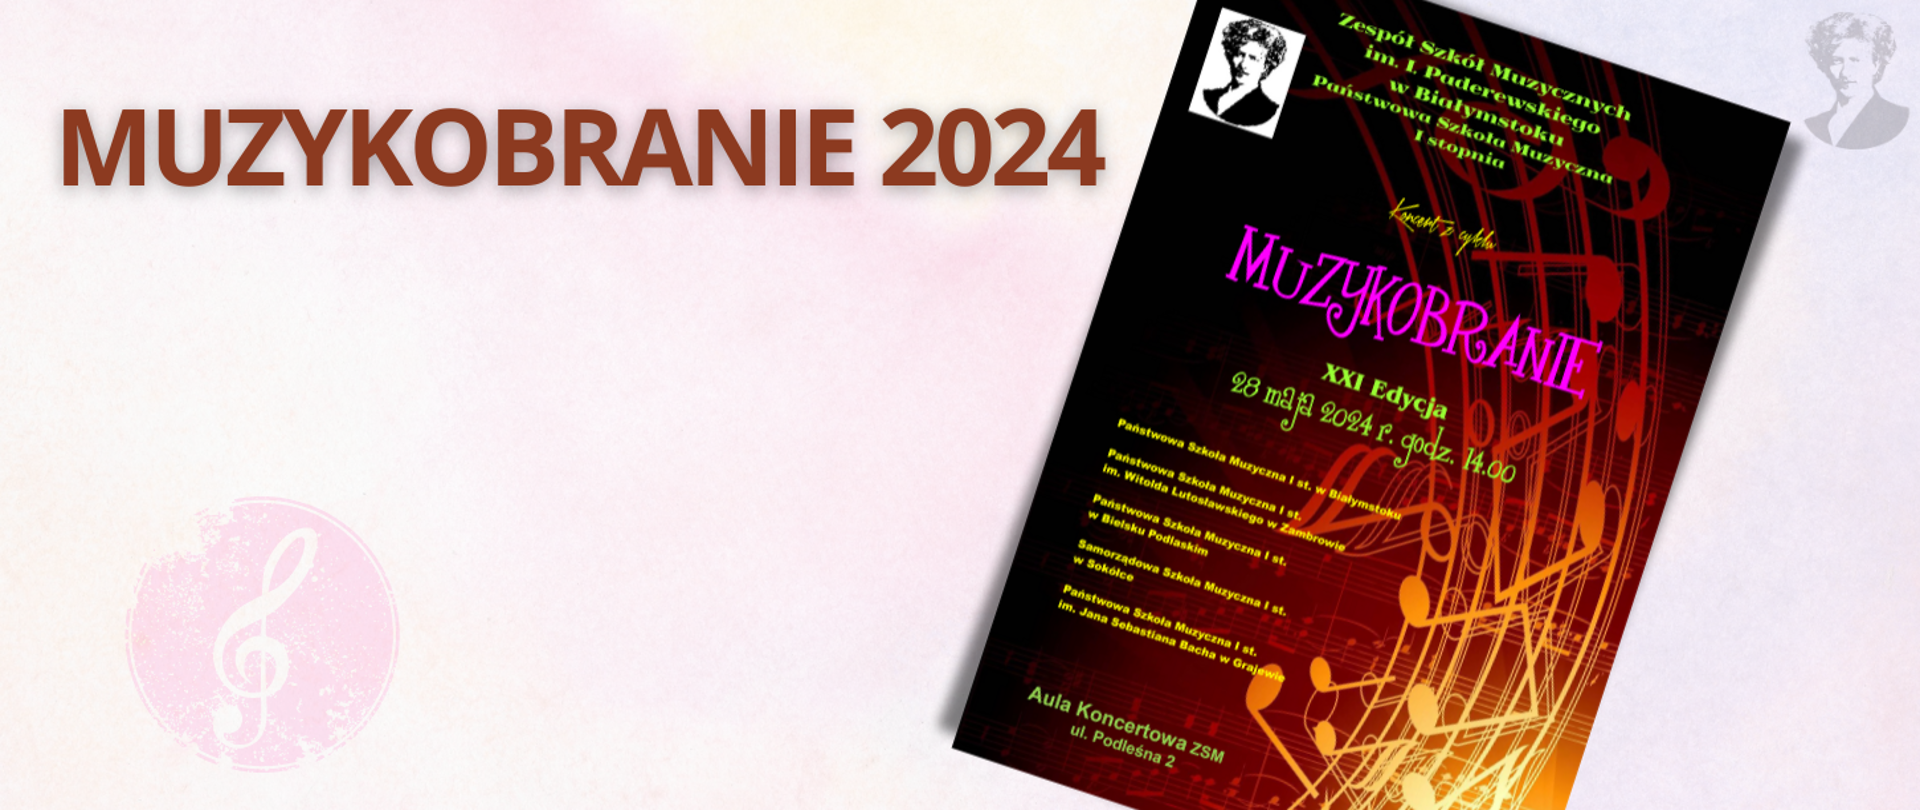 Różowo-fioletowa grafika z brązowym napisem "MUZYKOBRANIE 2024", po prawej stronie miniatura plakatu wydarzenia i podobizna Paderewskiego.